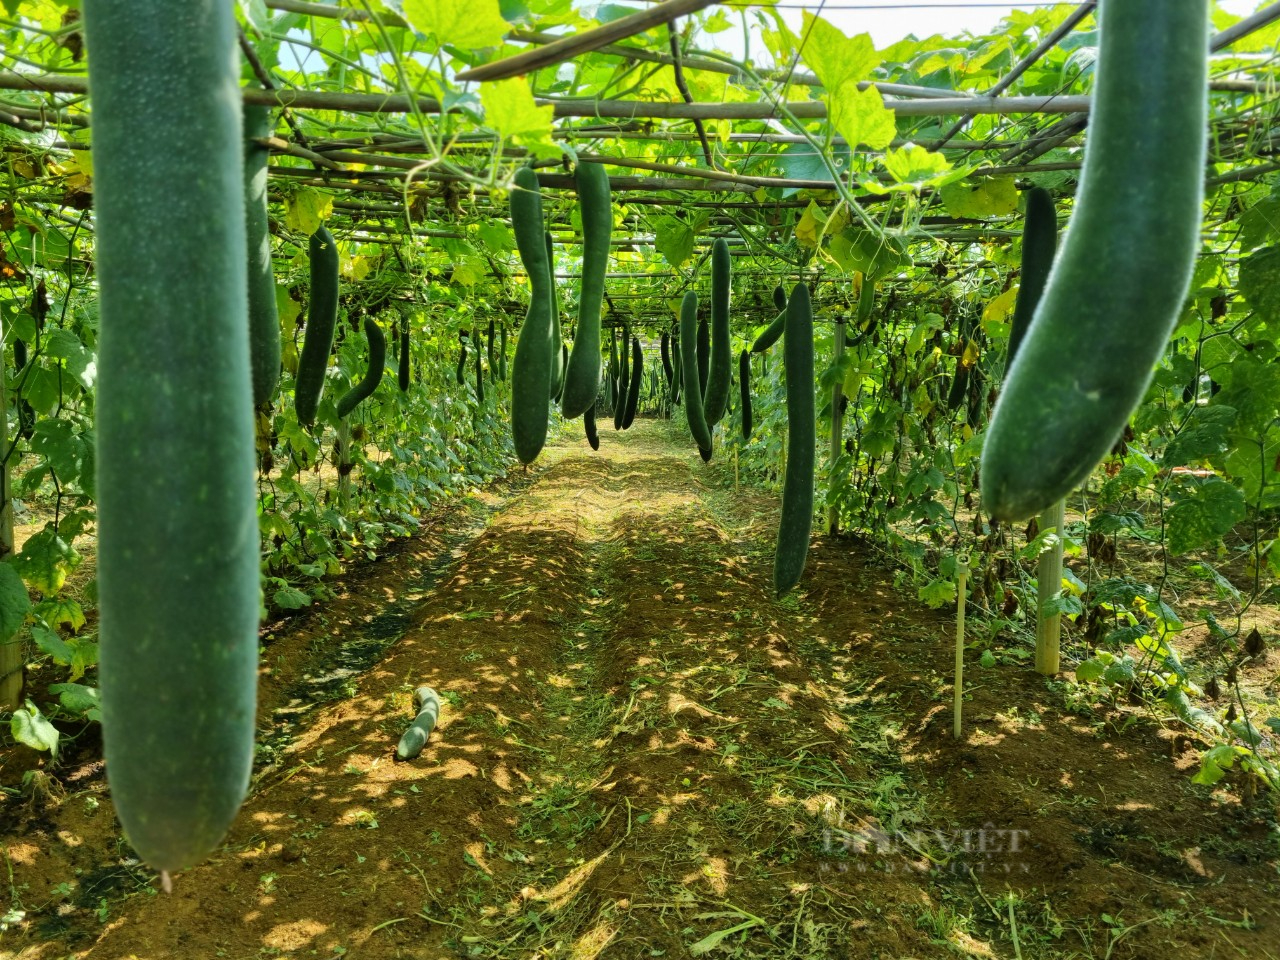 Nông dân ở Sơn La lãi hàng trăm triệu nhờ trồng rau quả liên kết với doanh nghiệp - Ảnh 2.